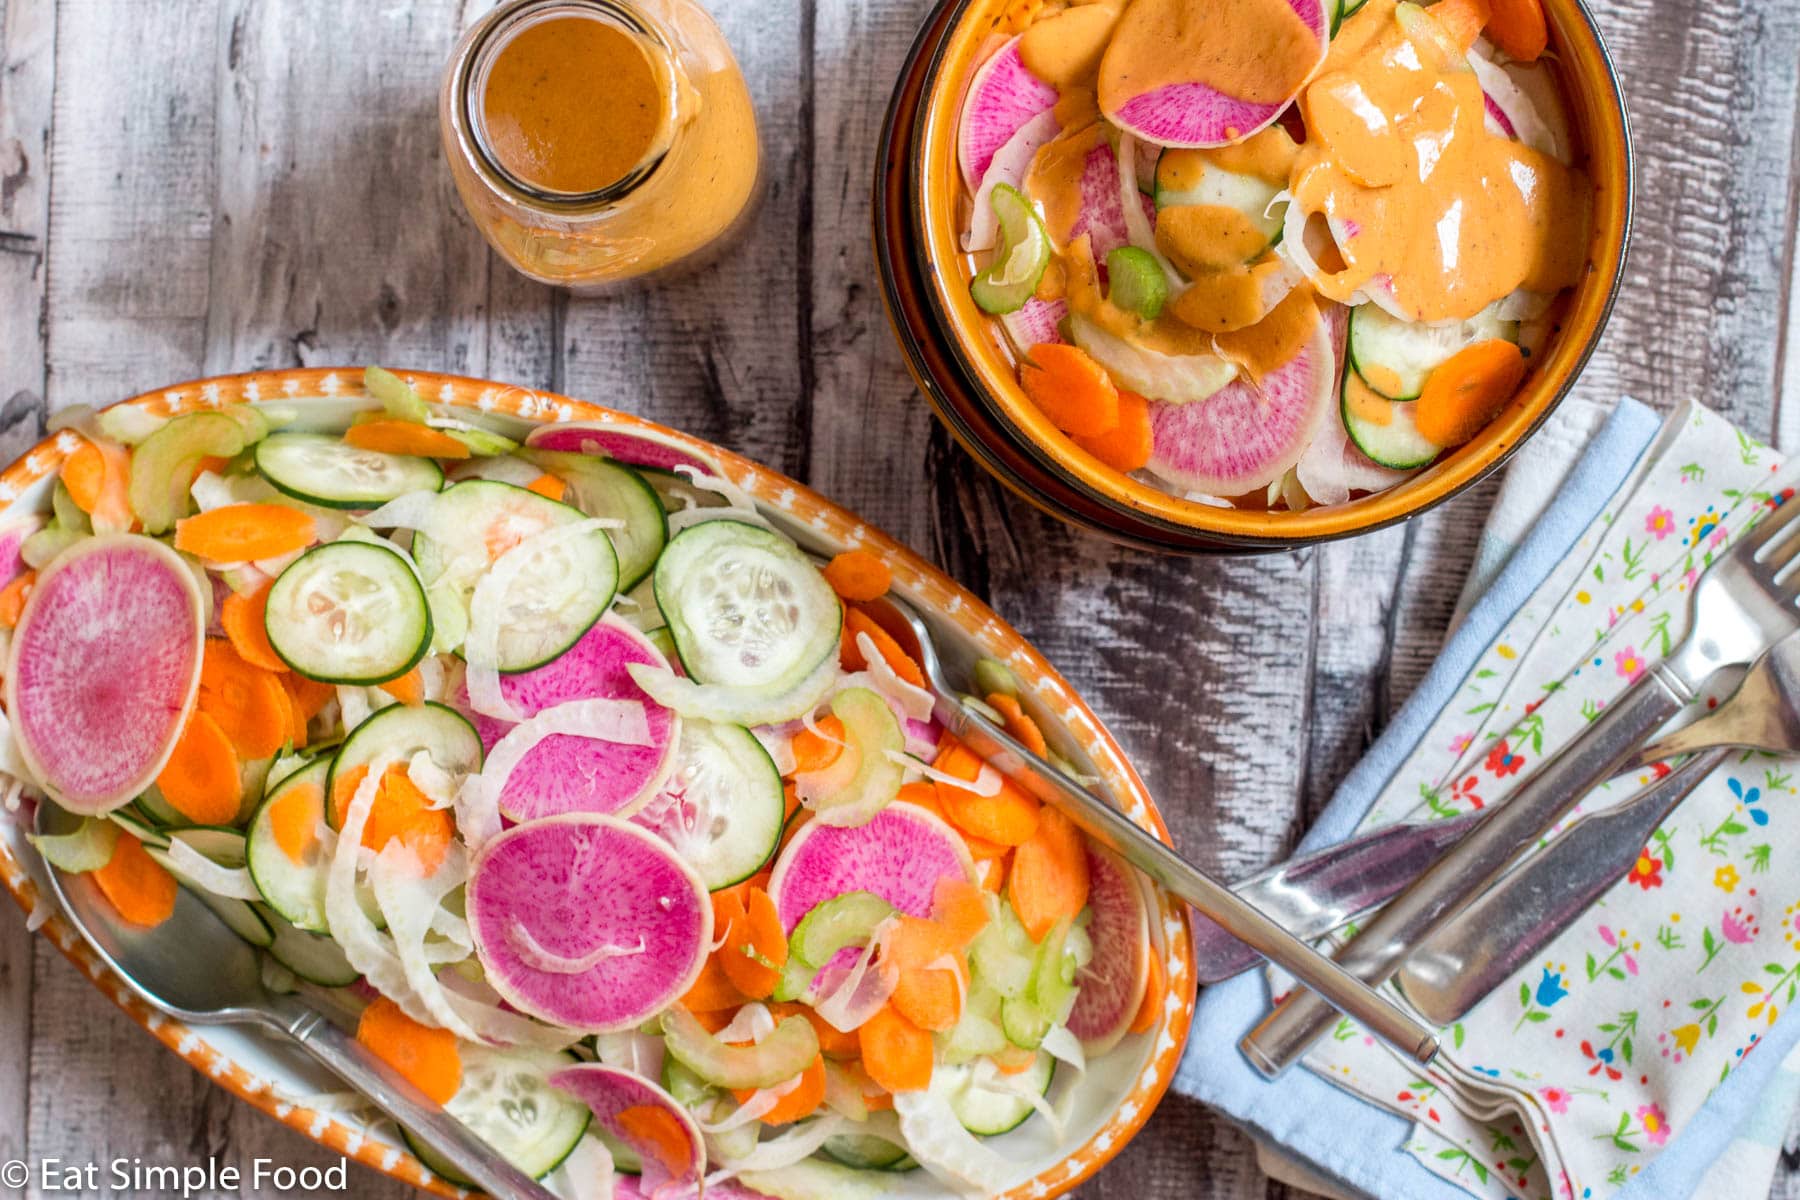 https://eatsimplefood.com/wp-content/uploads/2020/04/Raw-Sliced-Salad-Top-EatSimpleFood.com_.jpg